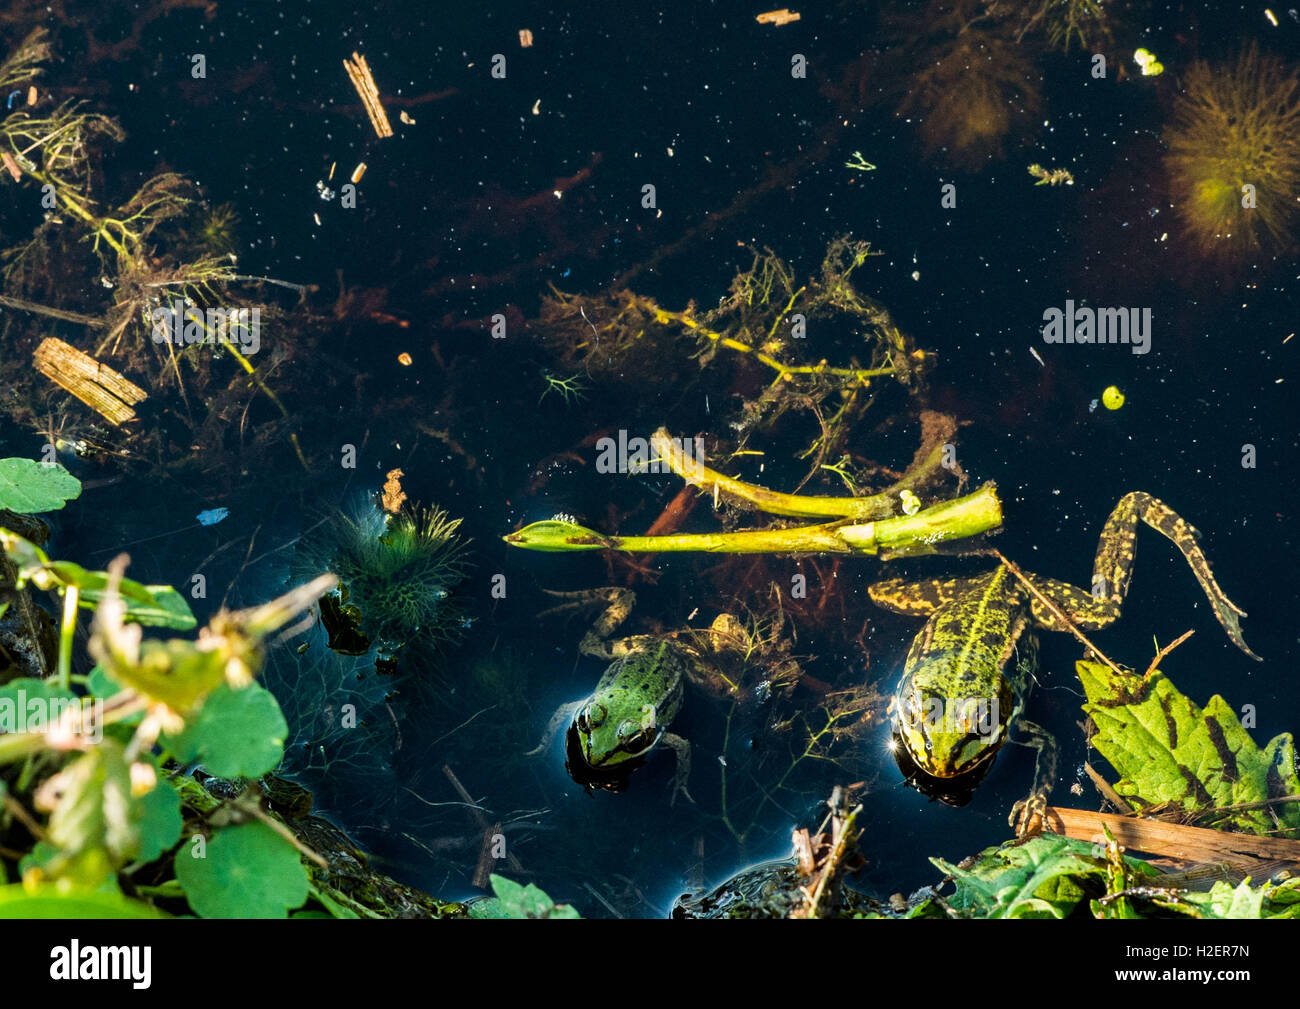 Hille, Germania. Xxv Sep, 2016. Due moor rane in un colore verde seduto in uno stagno a 'Grosses Torfmoor' (lit. "Big Turf Moor') vicino a Hille, Germania, 25 settembre 2016. Foto: LINO MIRGELER/dpa/Alamy Live News Foto Stock